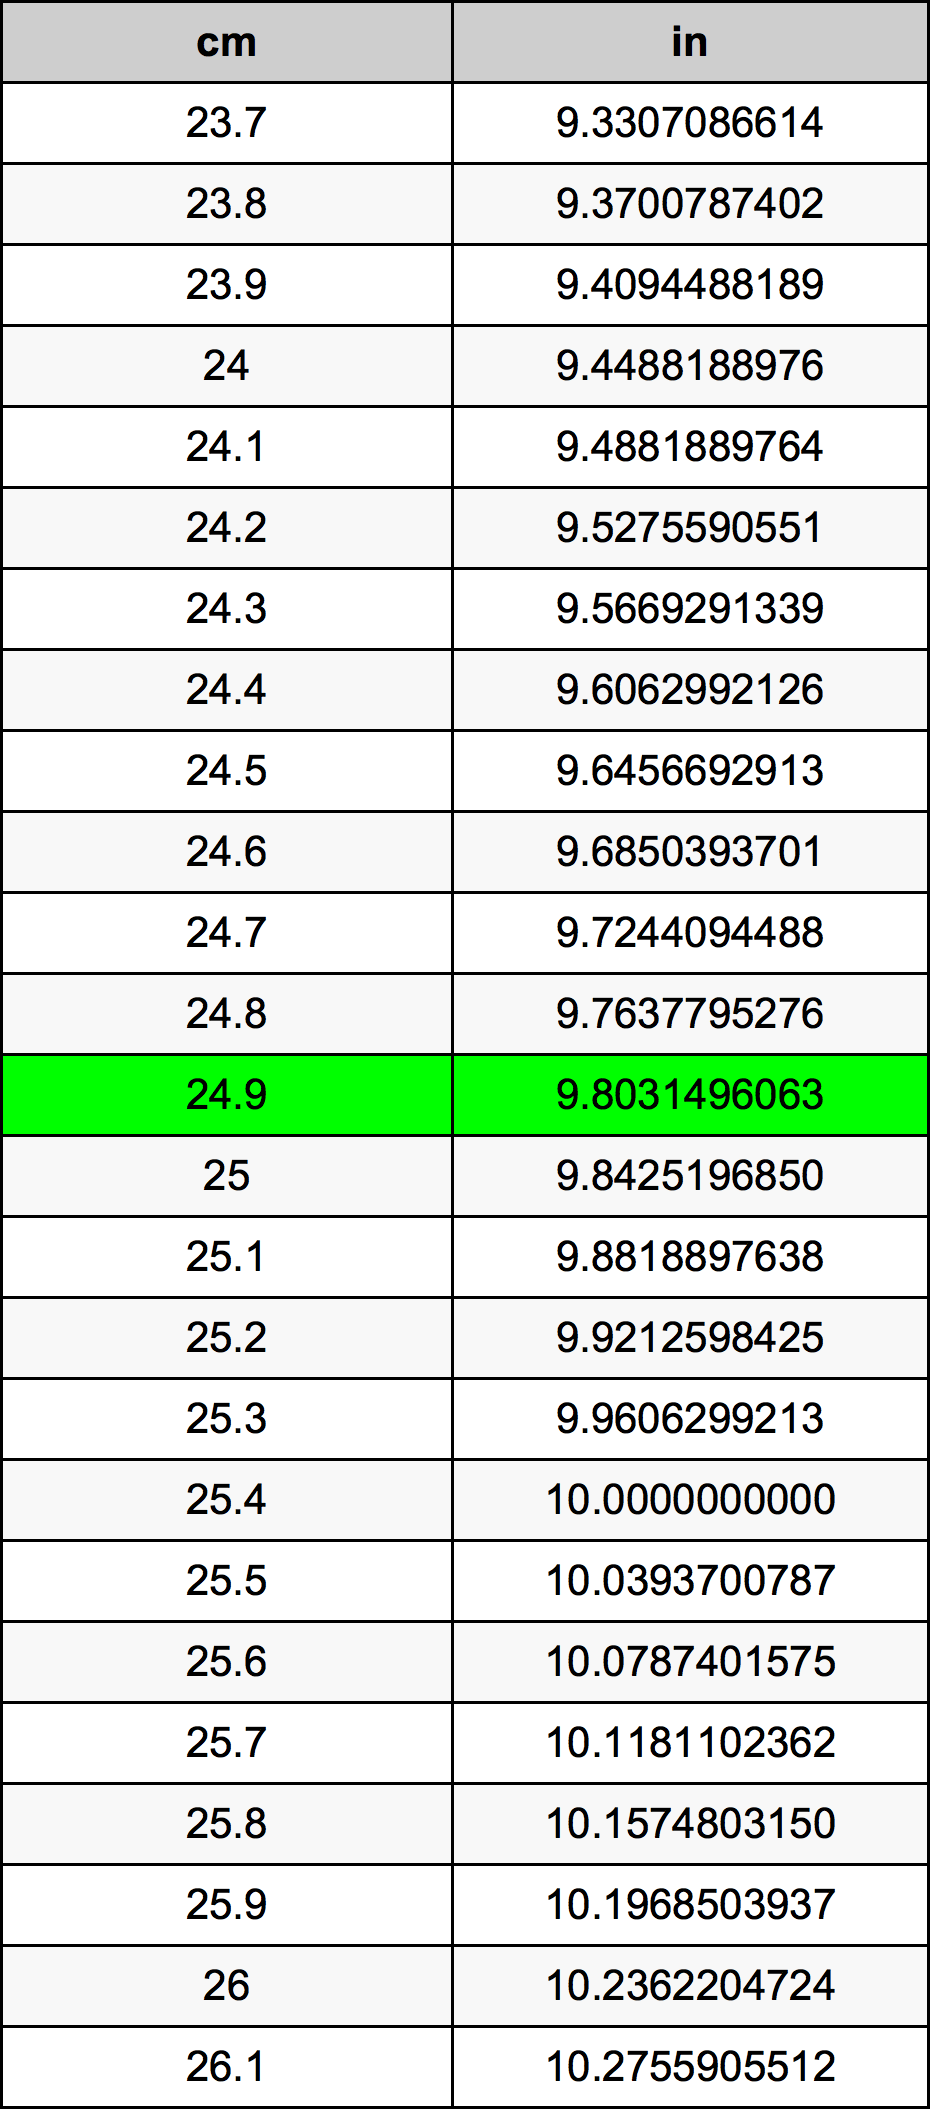 24.9 Centiméter átszámítási táblázat